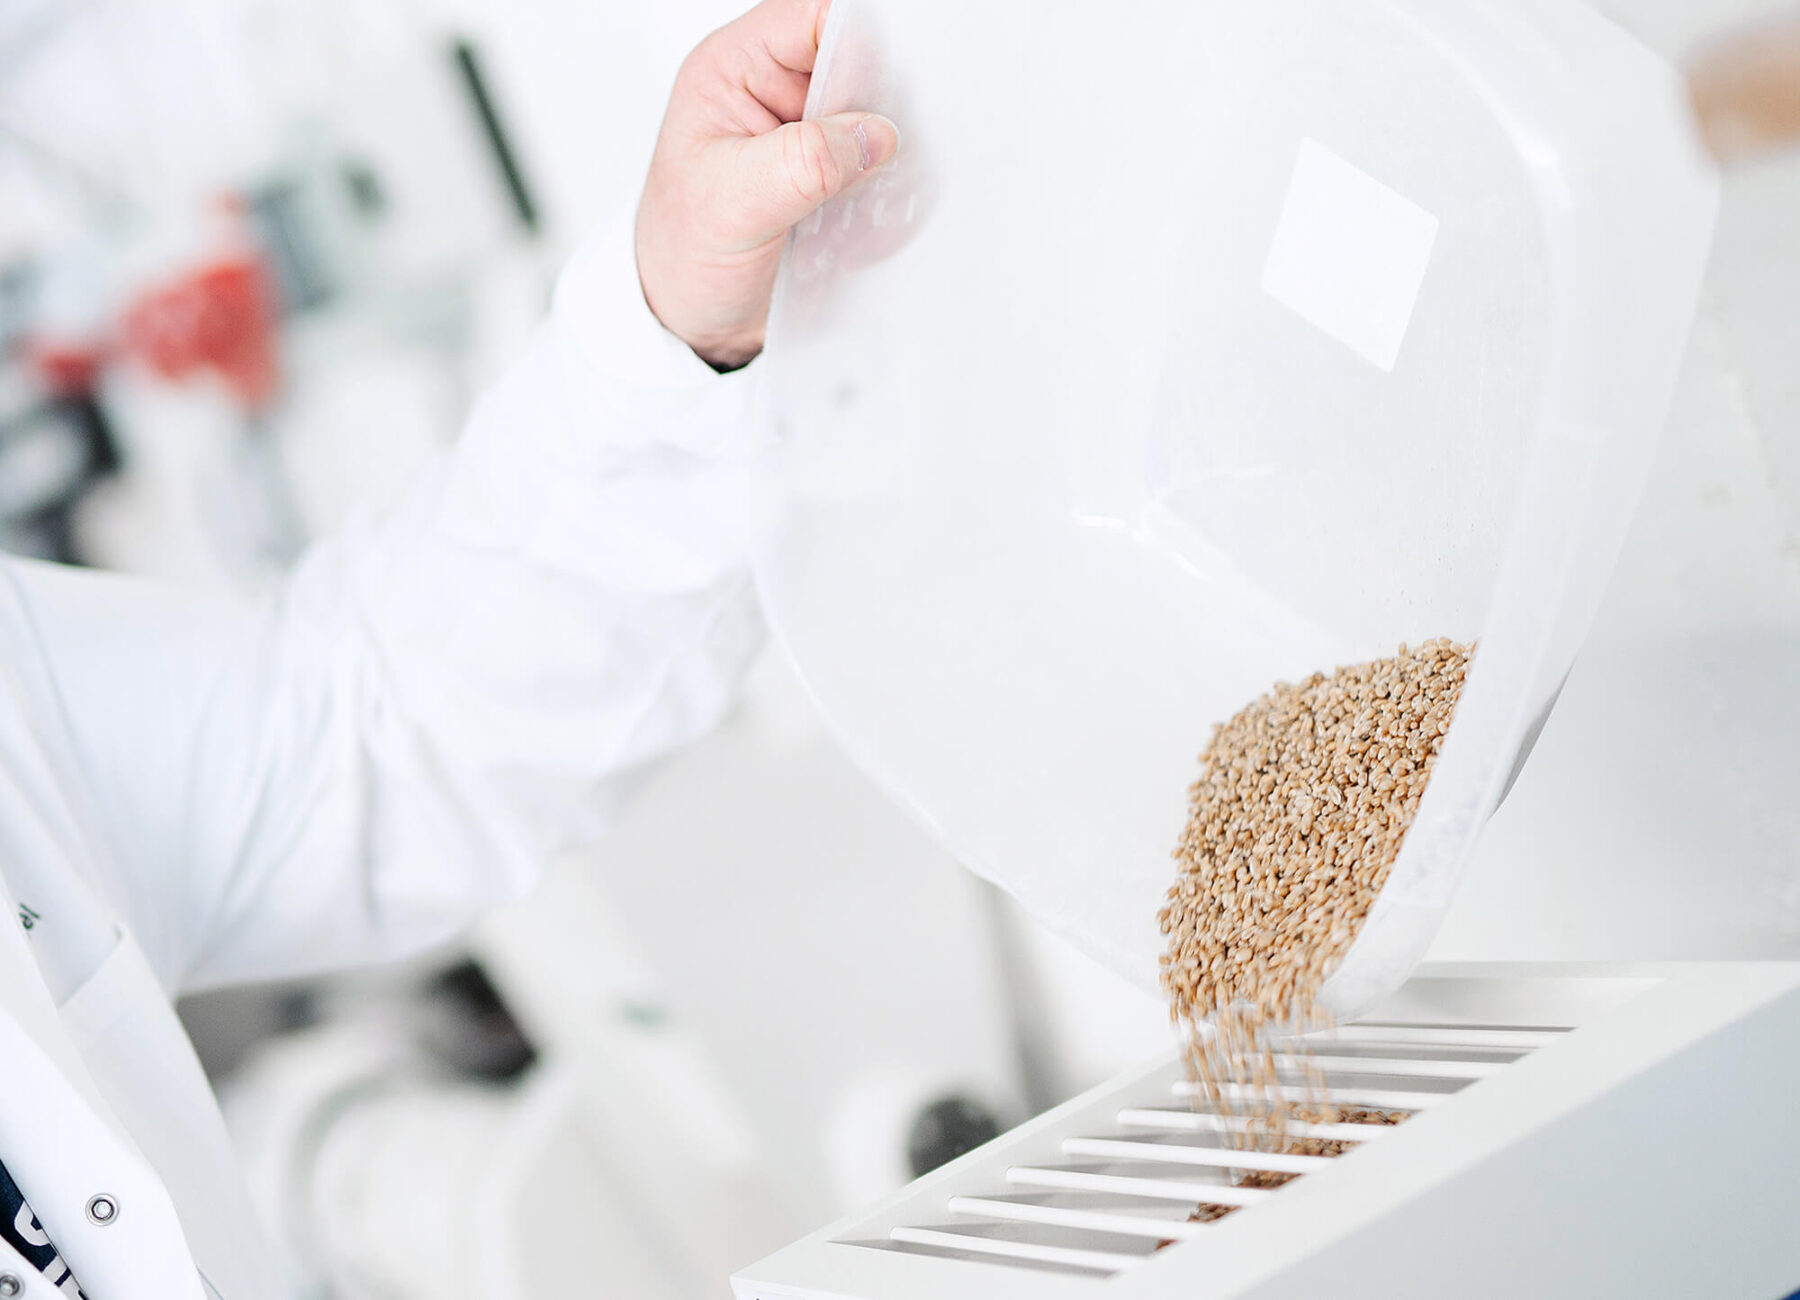 Befüllung der Quadrumat - Vermahlung Getreide – Vorbereitung für analytische Untersuchungen